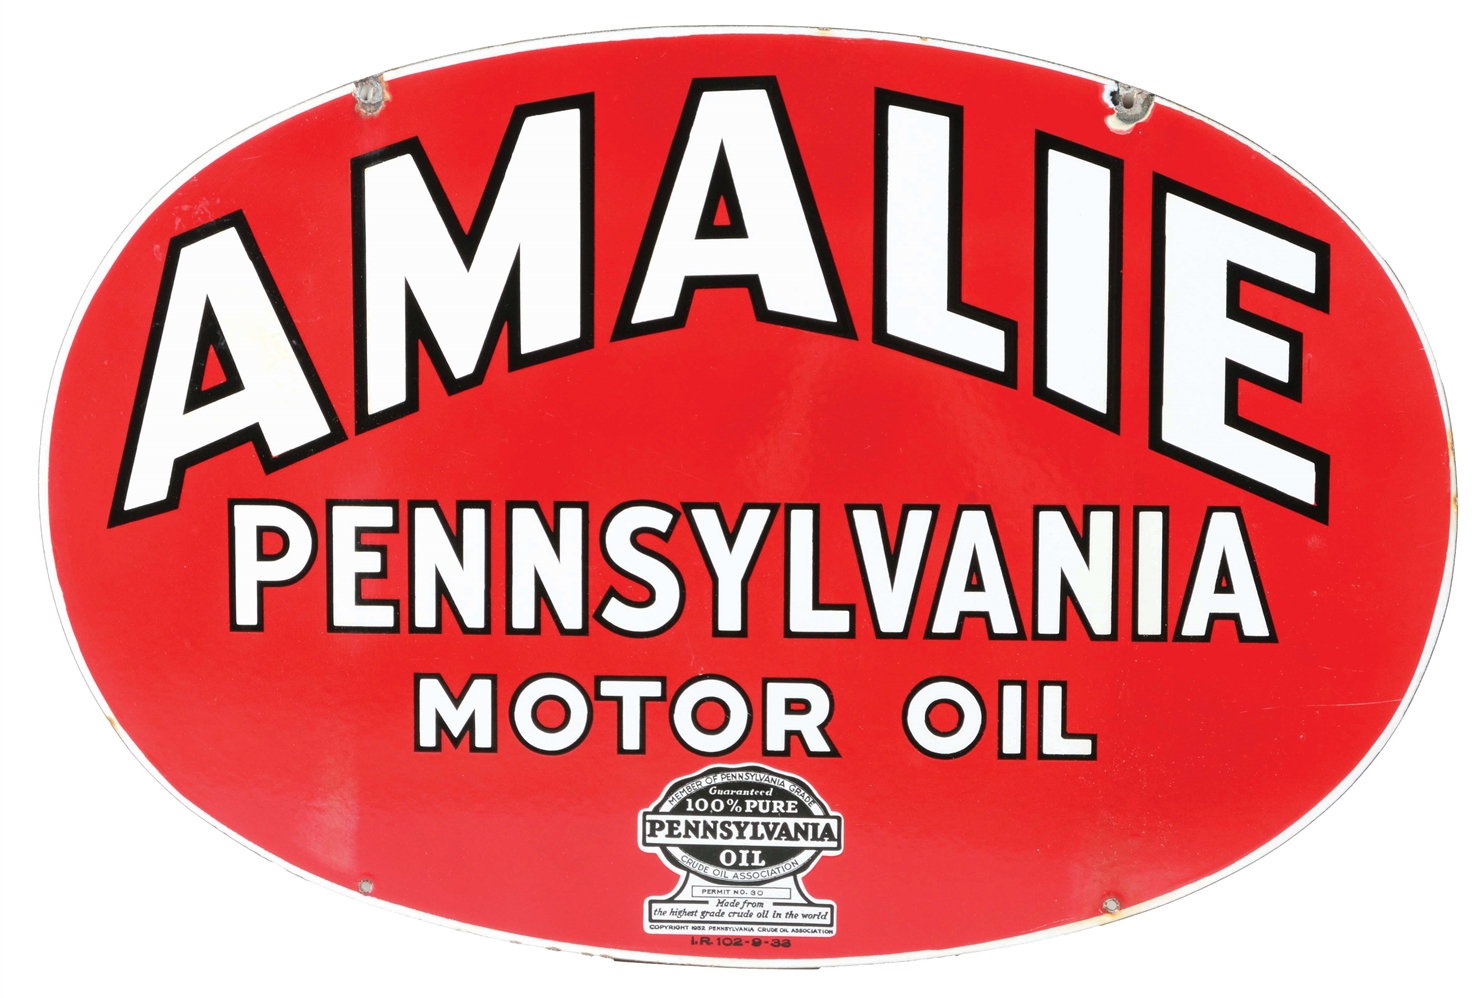 AMALIE MOTOR OIL PORCELAIN SERVICE STATION SIGN.